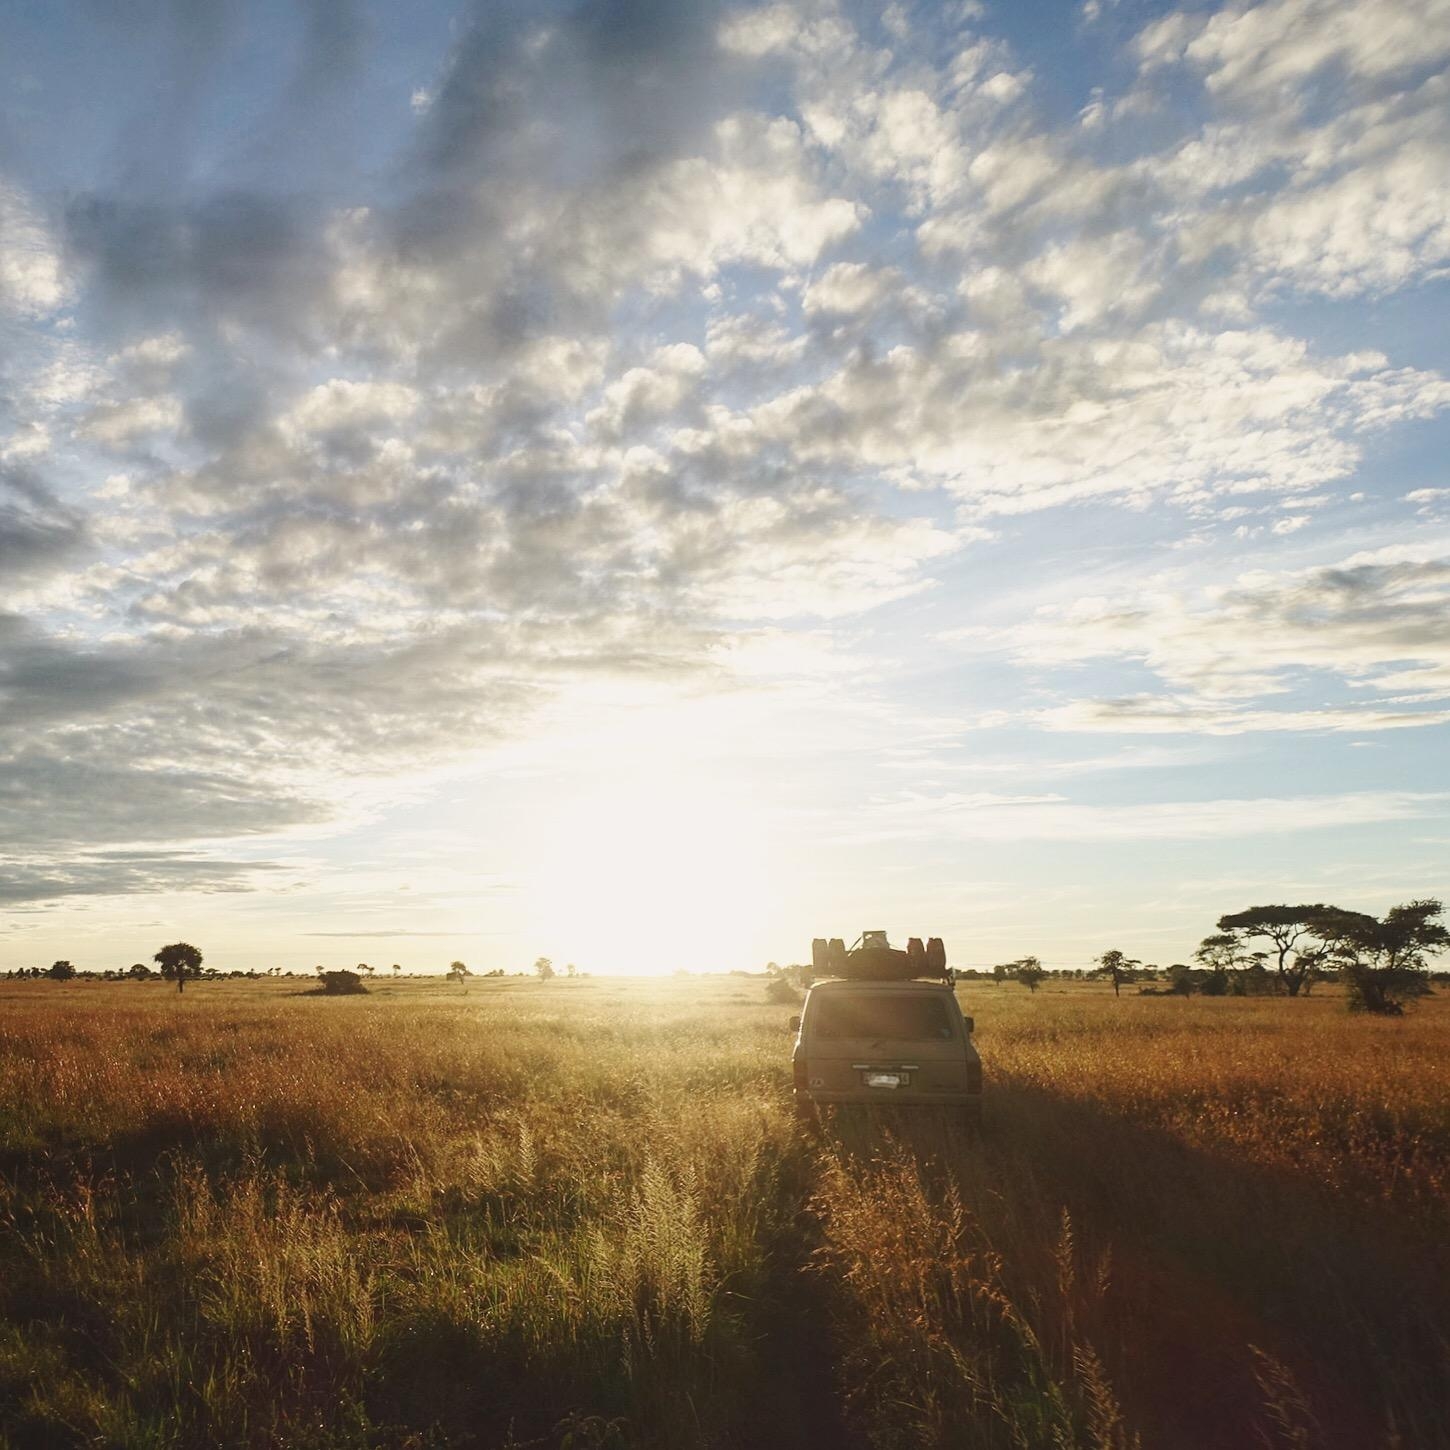 Sonnenaufgang in der Serengeti. Definitiv #meinschönsterurlaub 💛
#travelchallenge 
